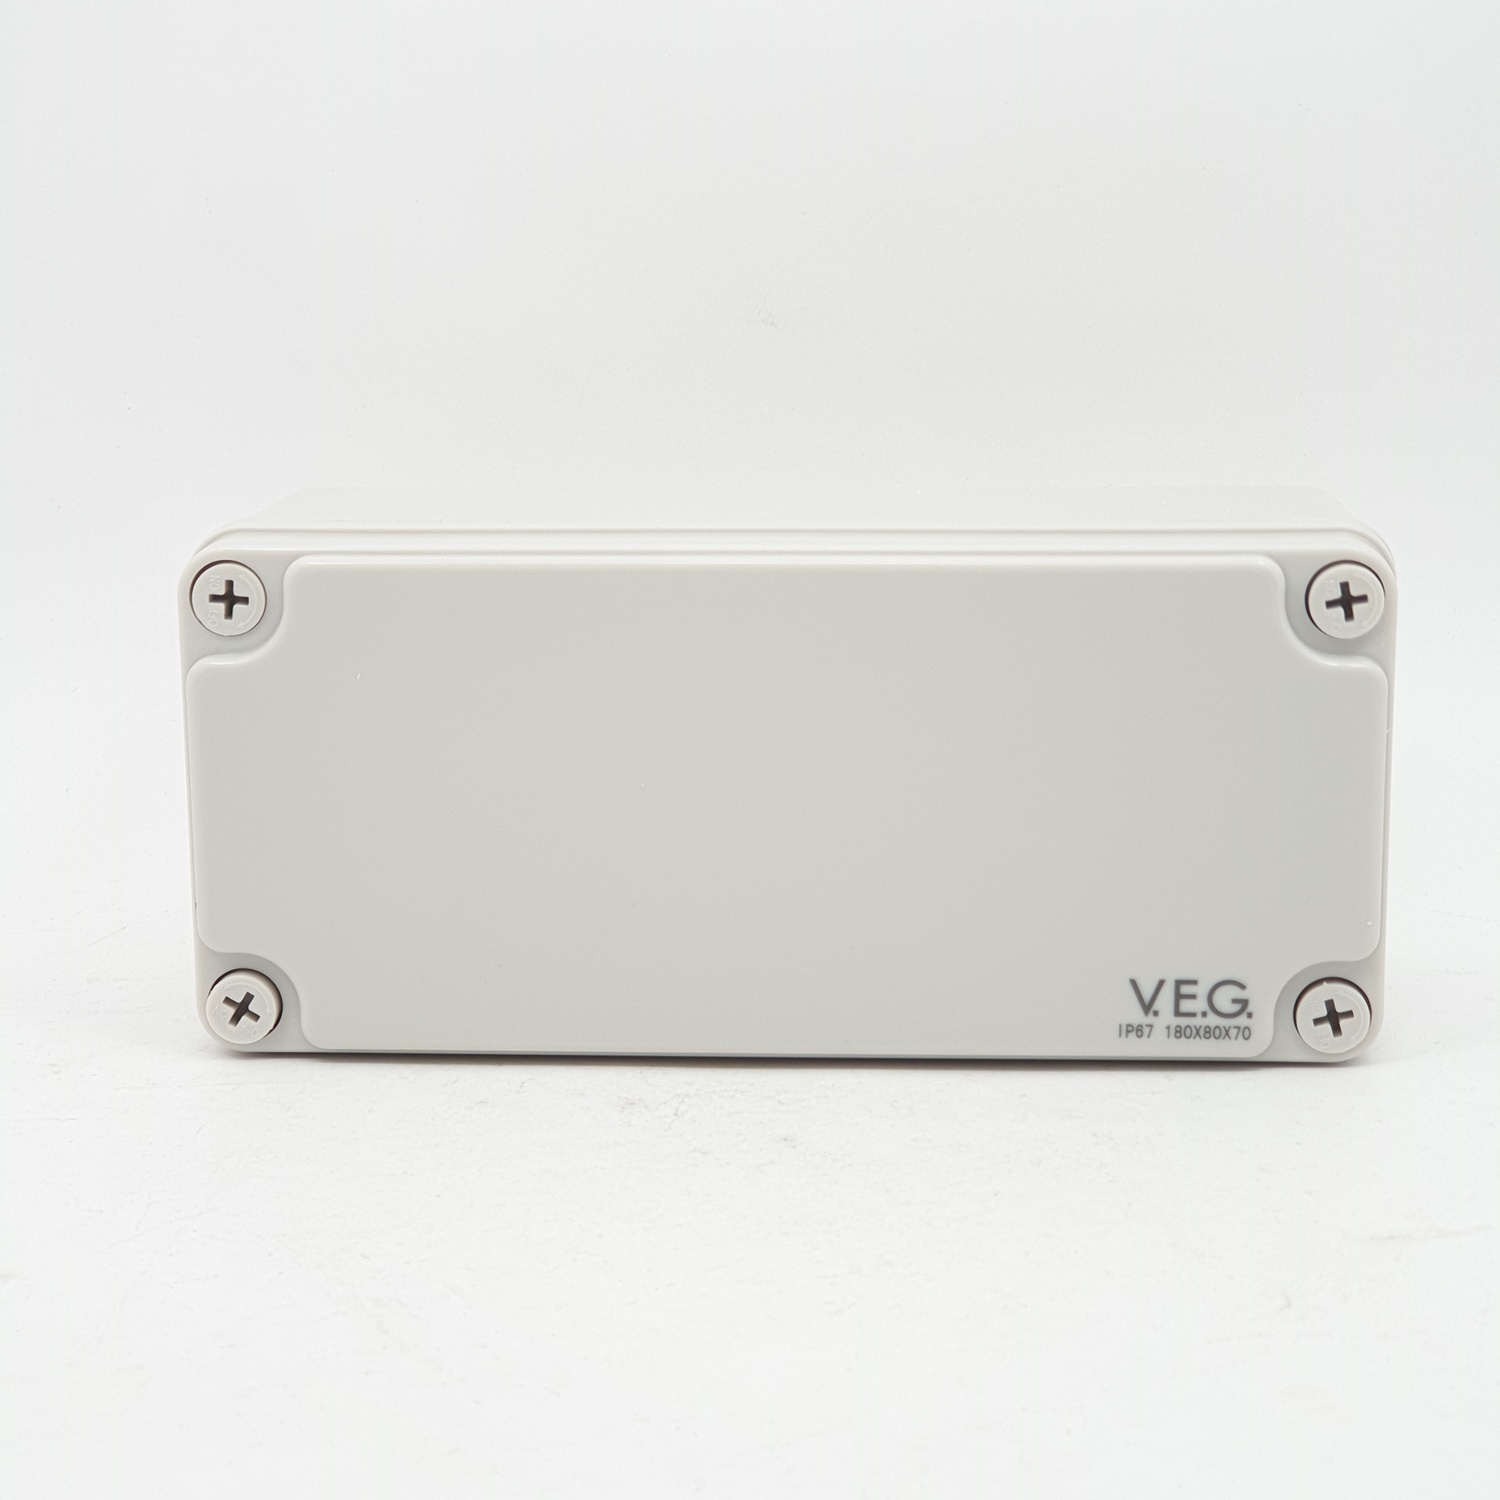 V.E.G กล่องกันน้ำพลาสติกTHE-07 180x180x70mm. V.E.G  ขาว